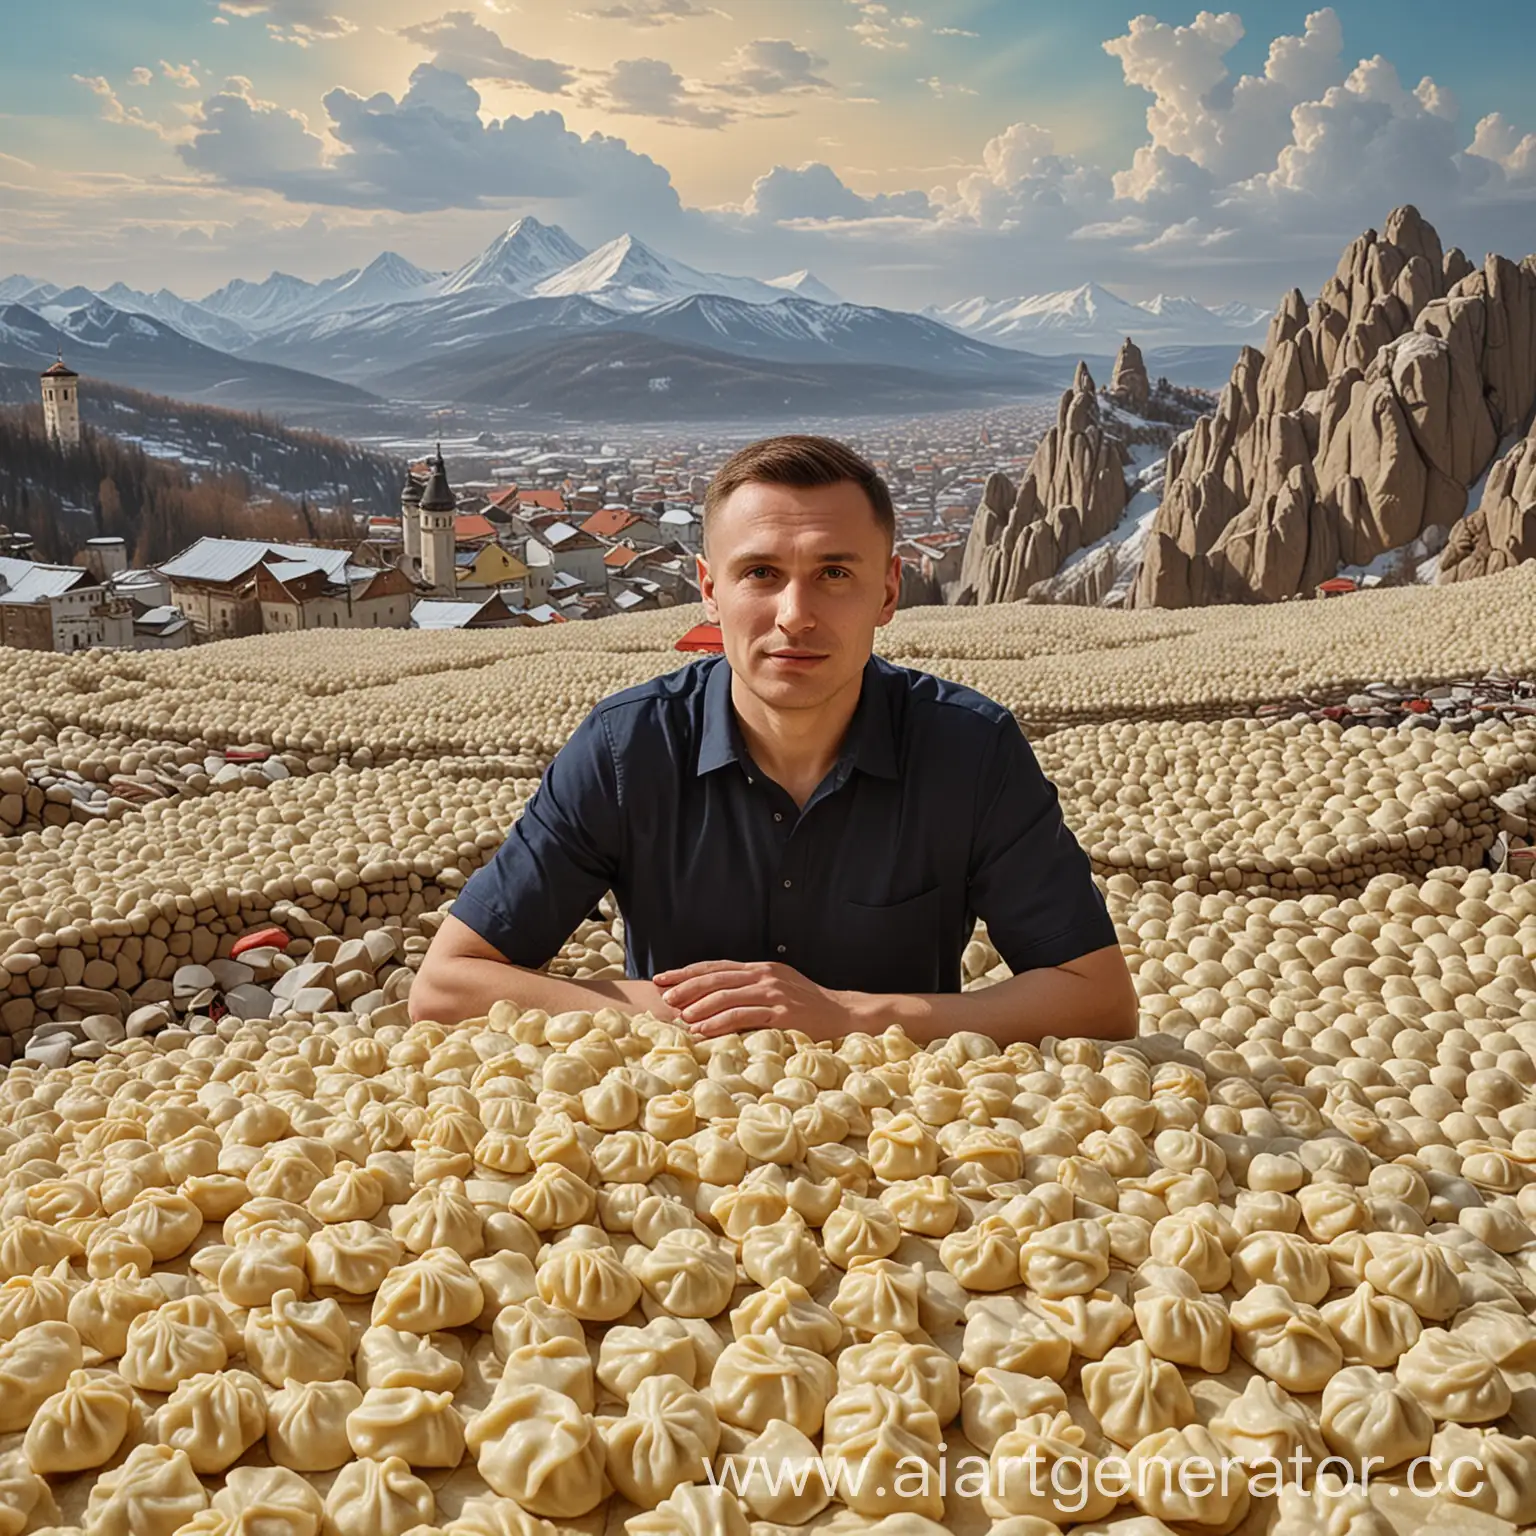 Alexander-Zubarev-Enjoying-a-Tower-of-Dumplings